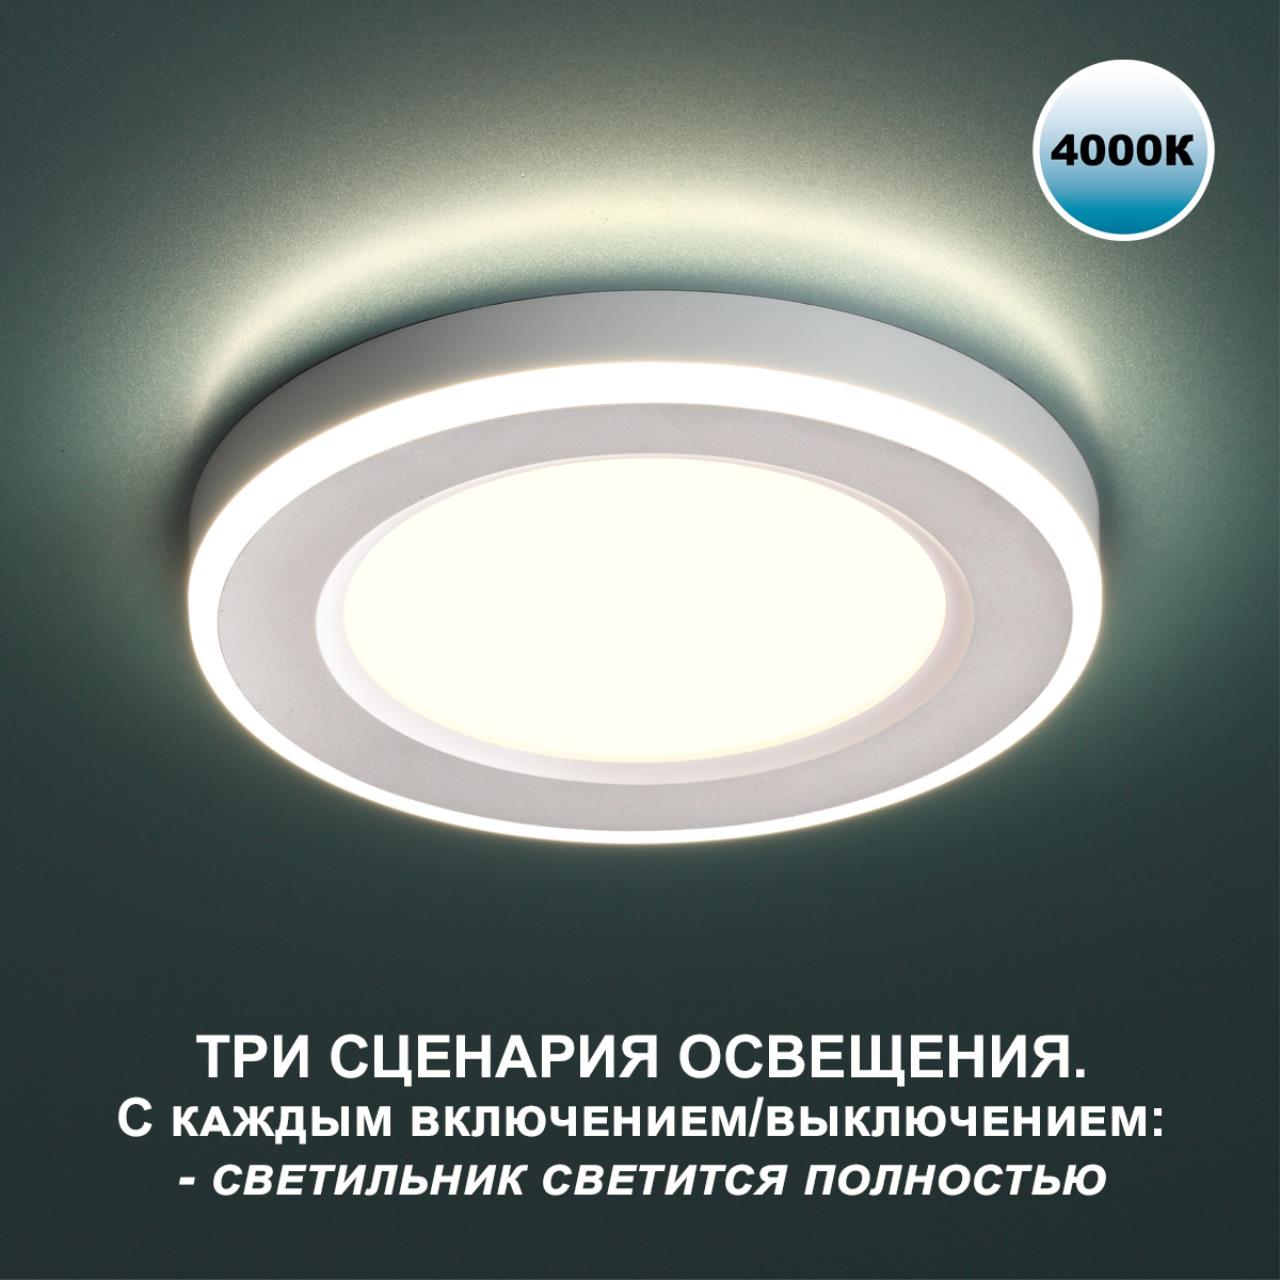 Трёхрежимный встраиваемый светодиодный светильник Novotech SPAN 359014